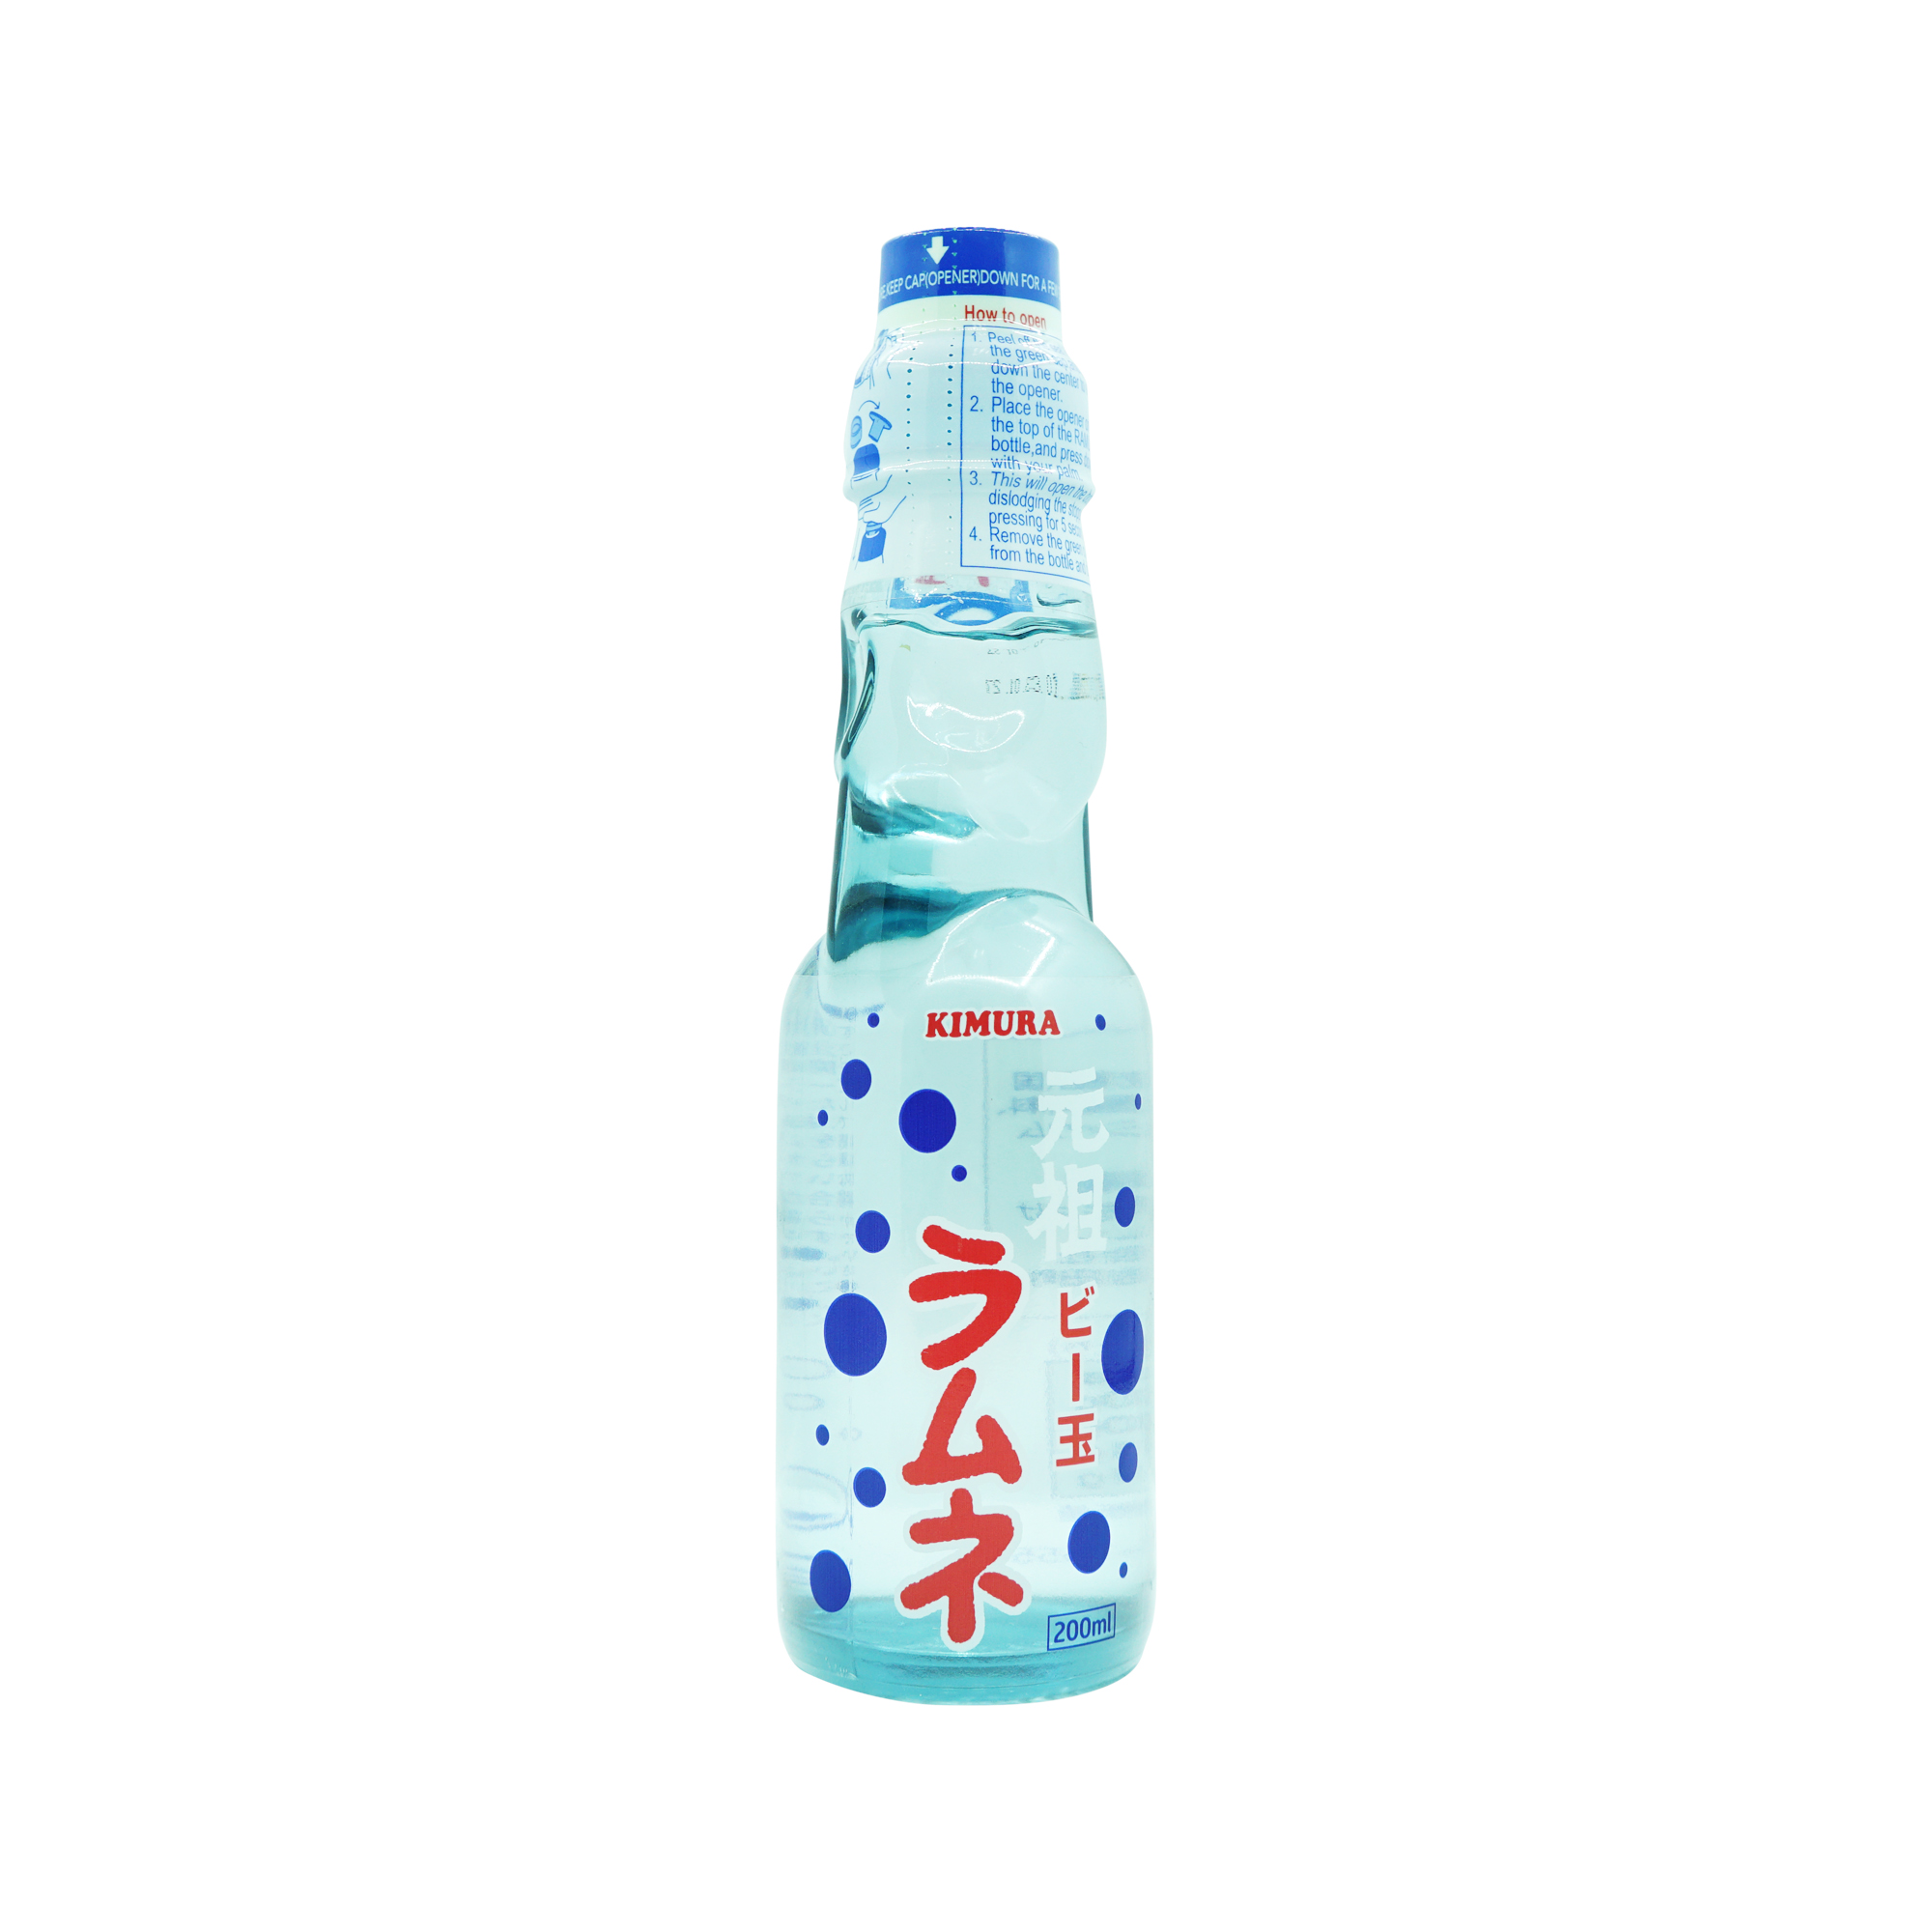 Kimura Lemon Soft Drink (200ml)